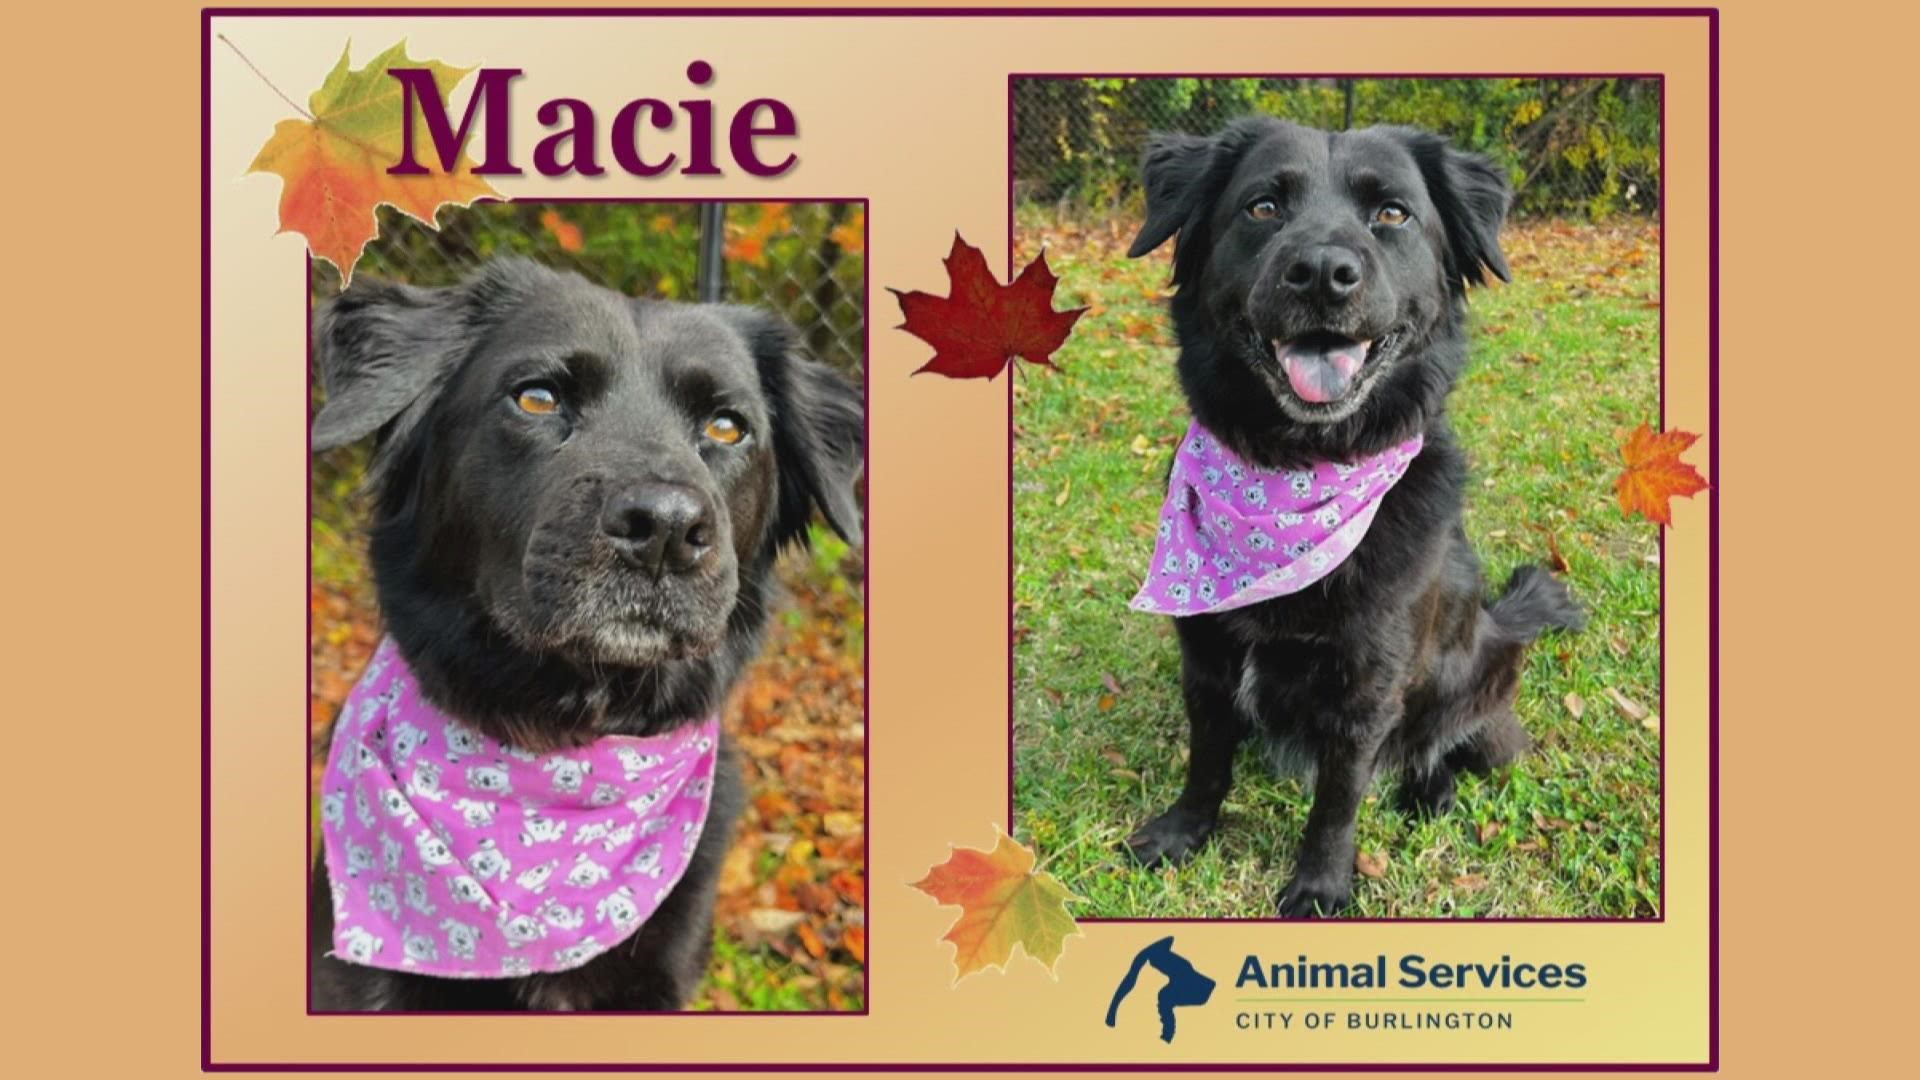 Let’s get Macie adopted!